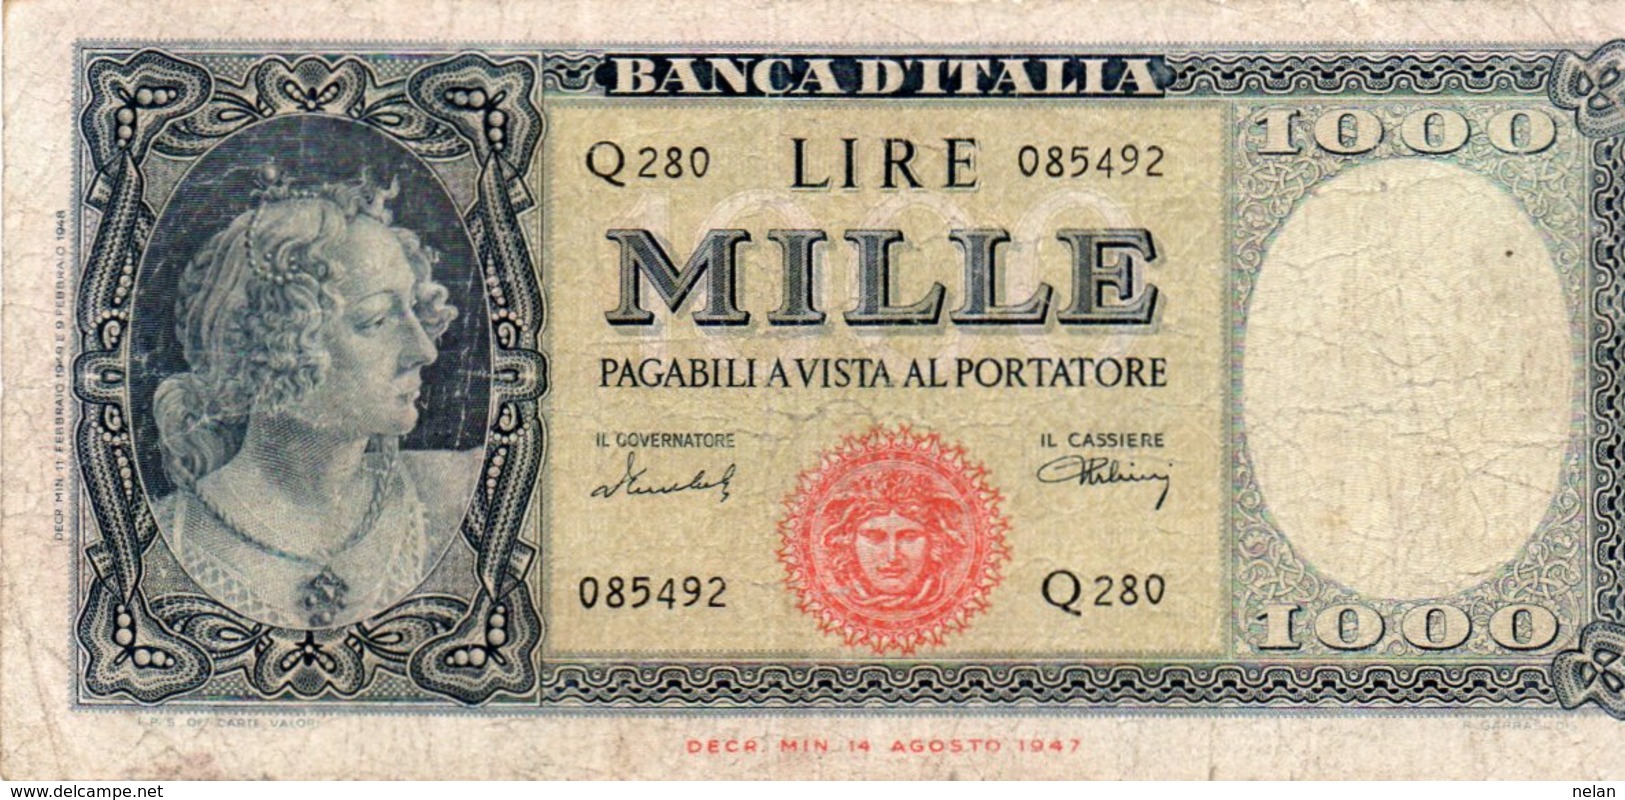 ITALIA-1,000 Lire (Medusa)-1947  P-83  VG - 1000 Lire